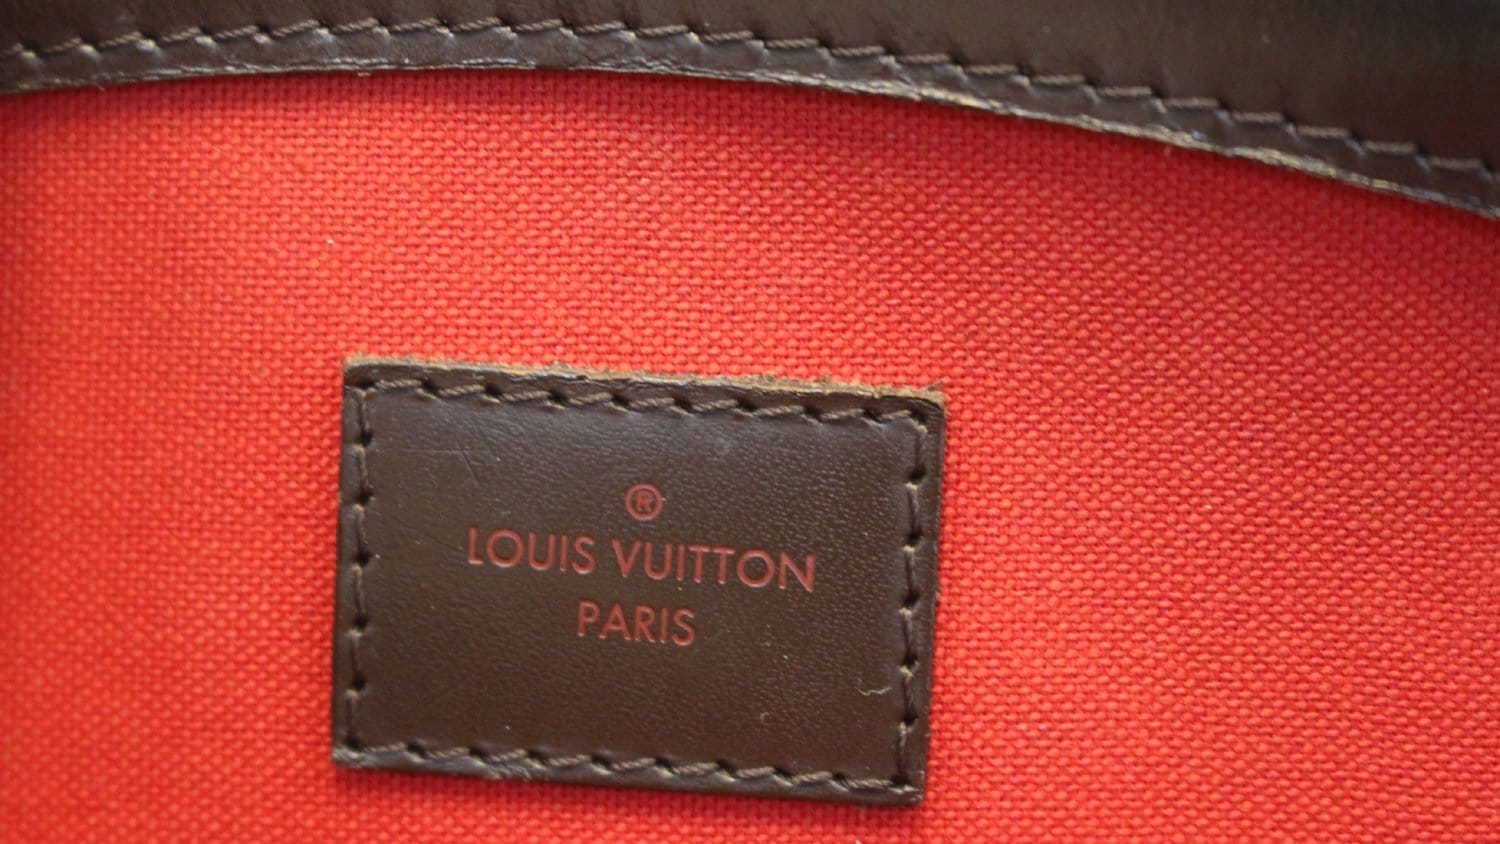 Authentic LOUIS VUITTON Damier Ebène Canvas Verona MM Large Bag